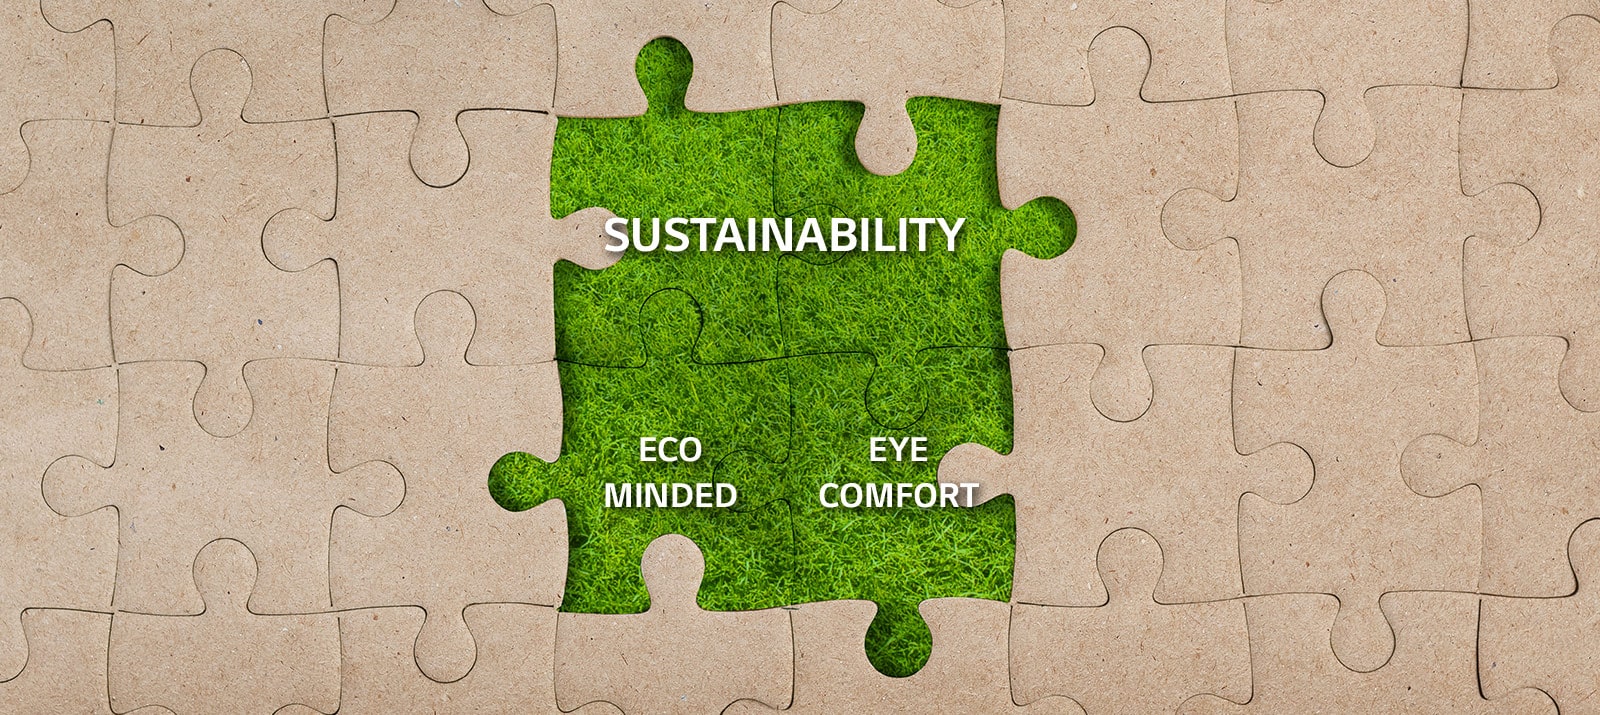 أربع قطع من الألغاز في منتصف أحجية الكرافت مغطاة بالعشب مع ظهور نصوص "الاستدامة" و"مراعاة البيئة" و"راحة العين".